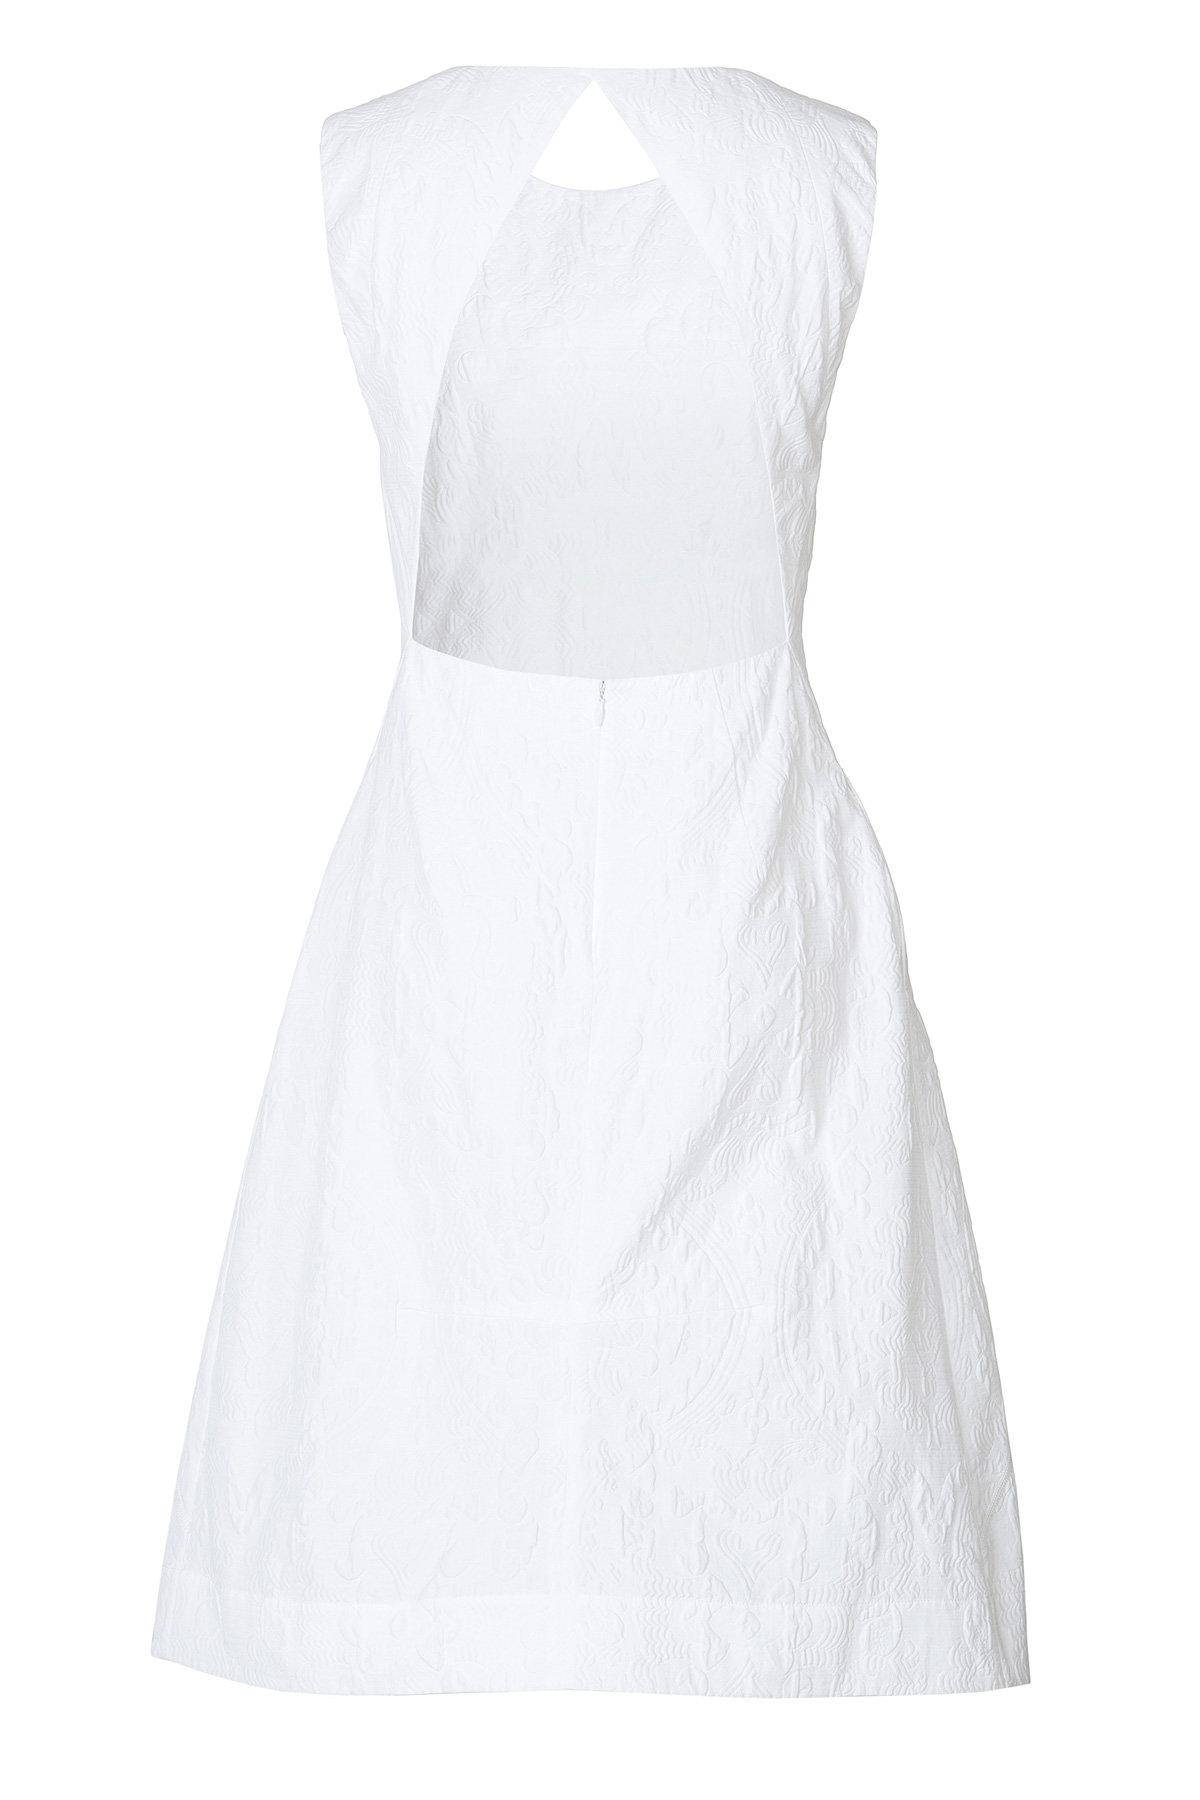 Lyst - Jil sander Shirt in White